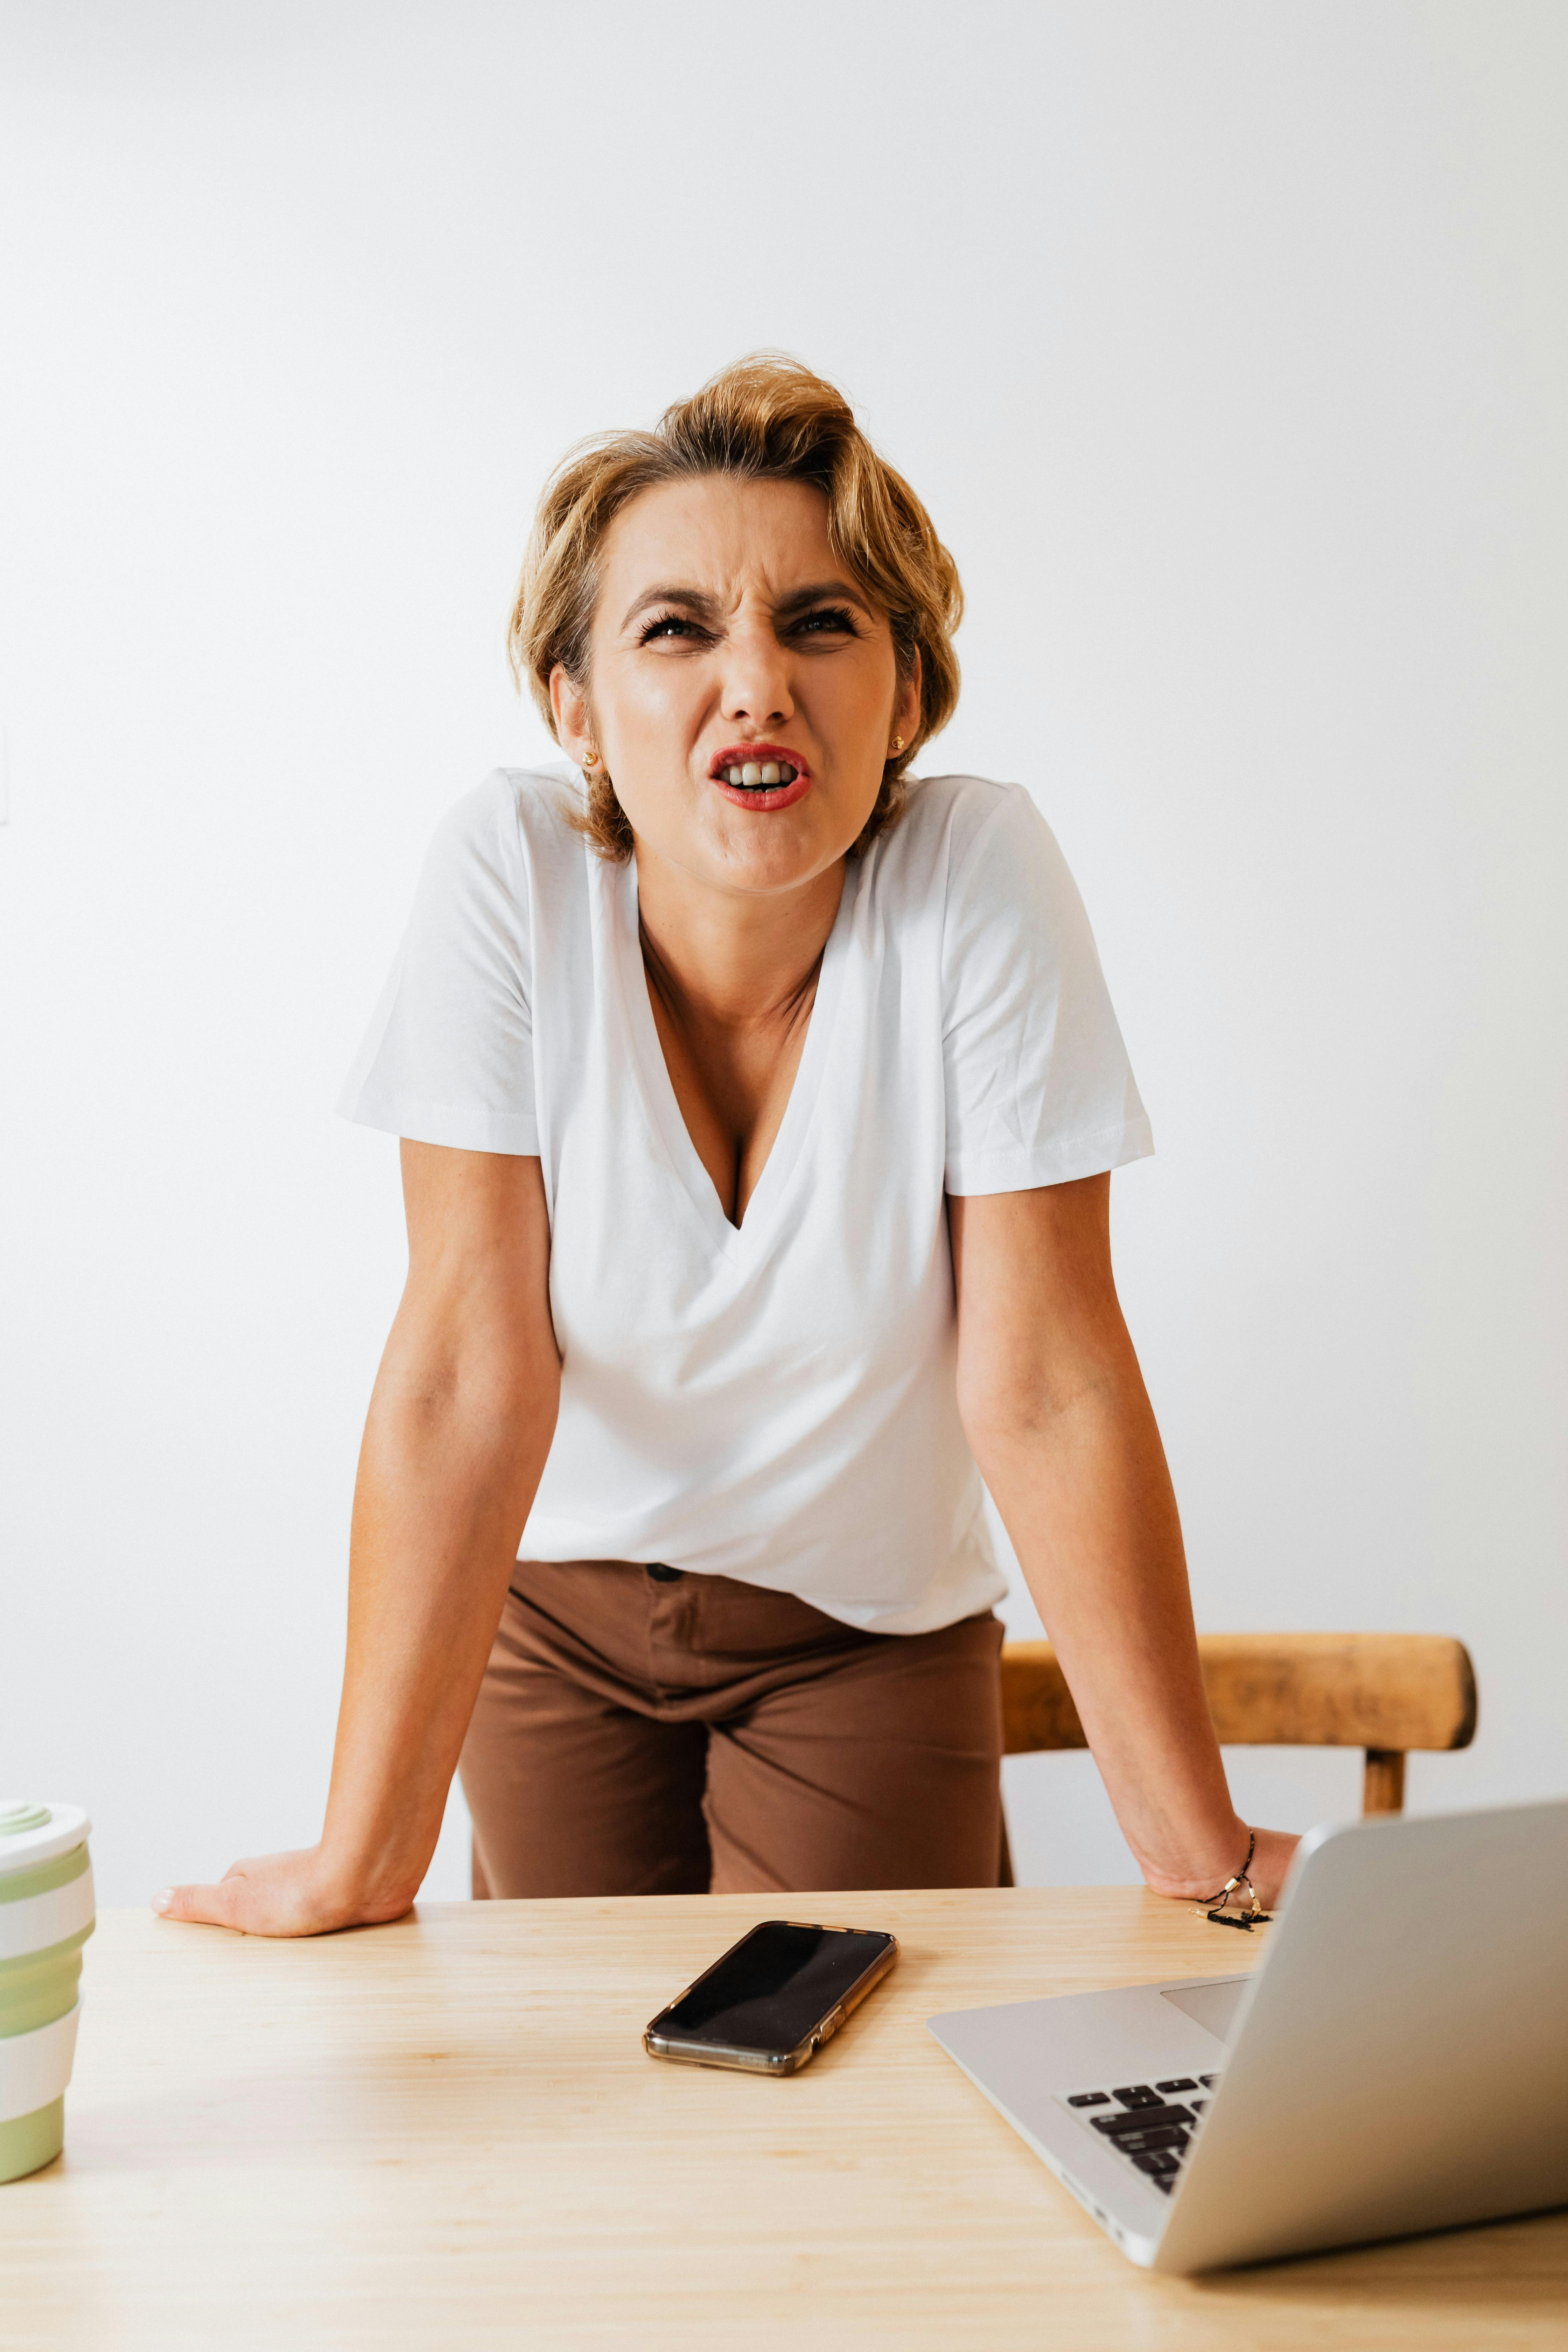 Eine Frau, die wütend reagiert, während sie ihre Hände auf einem Tisch balanciert | Quelle: Pexels